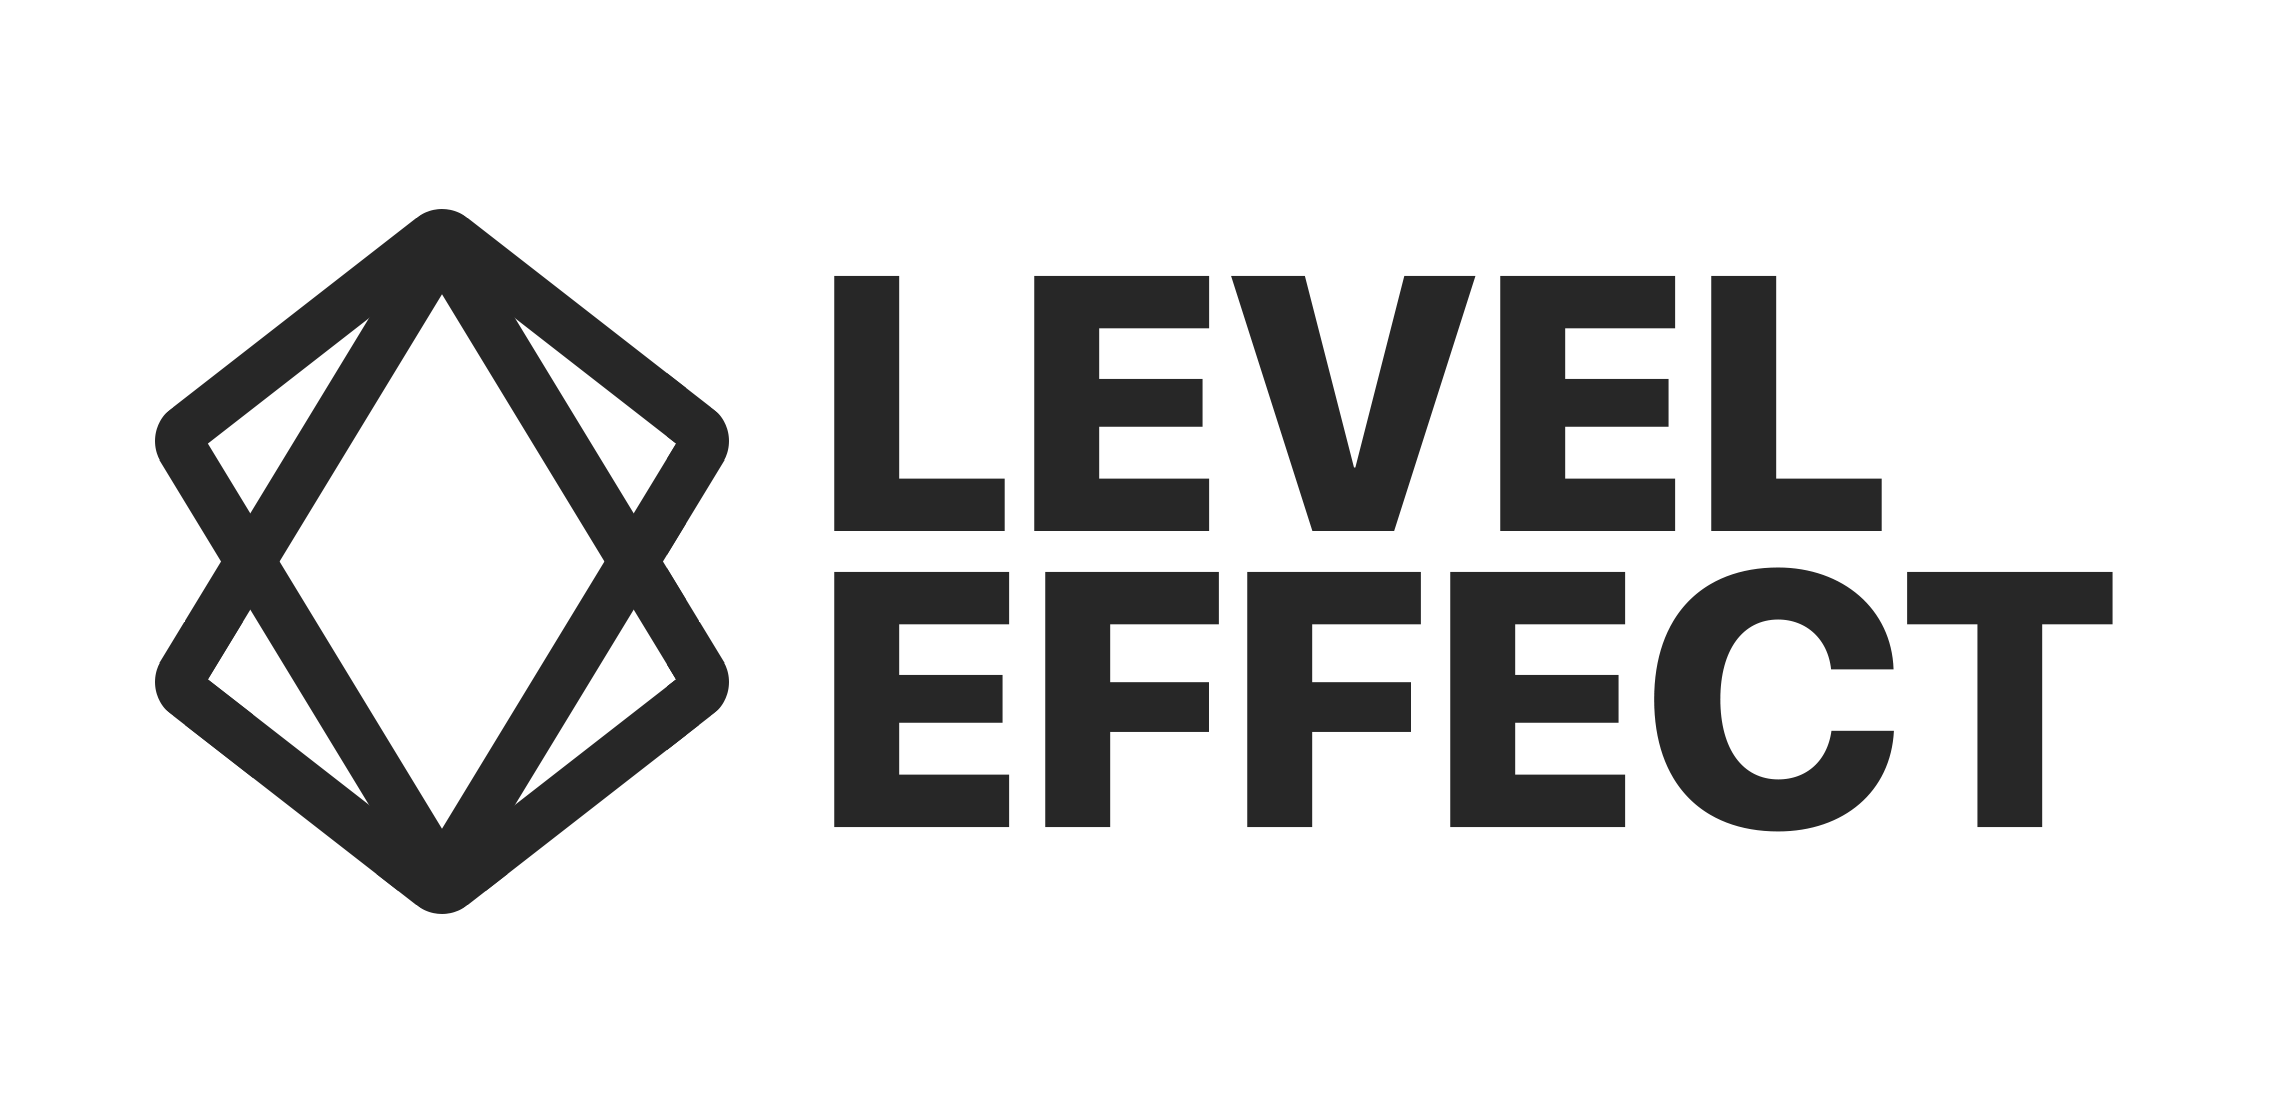 level effect - full size - dark